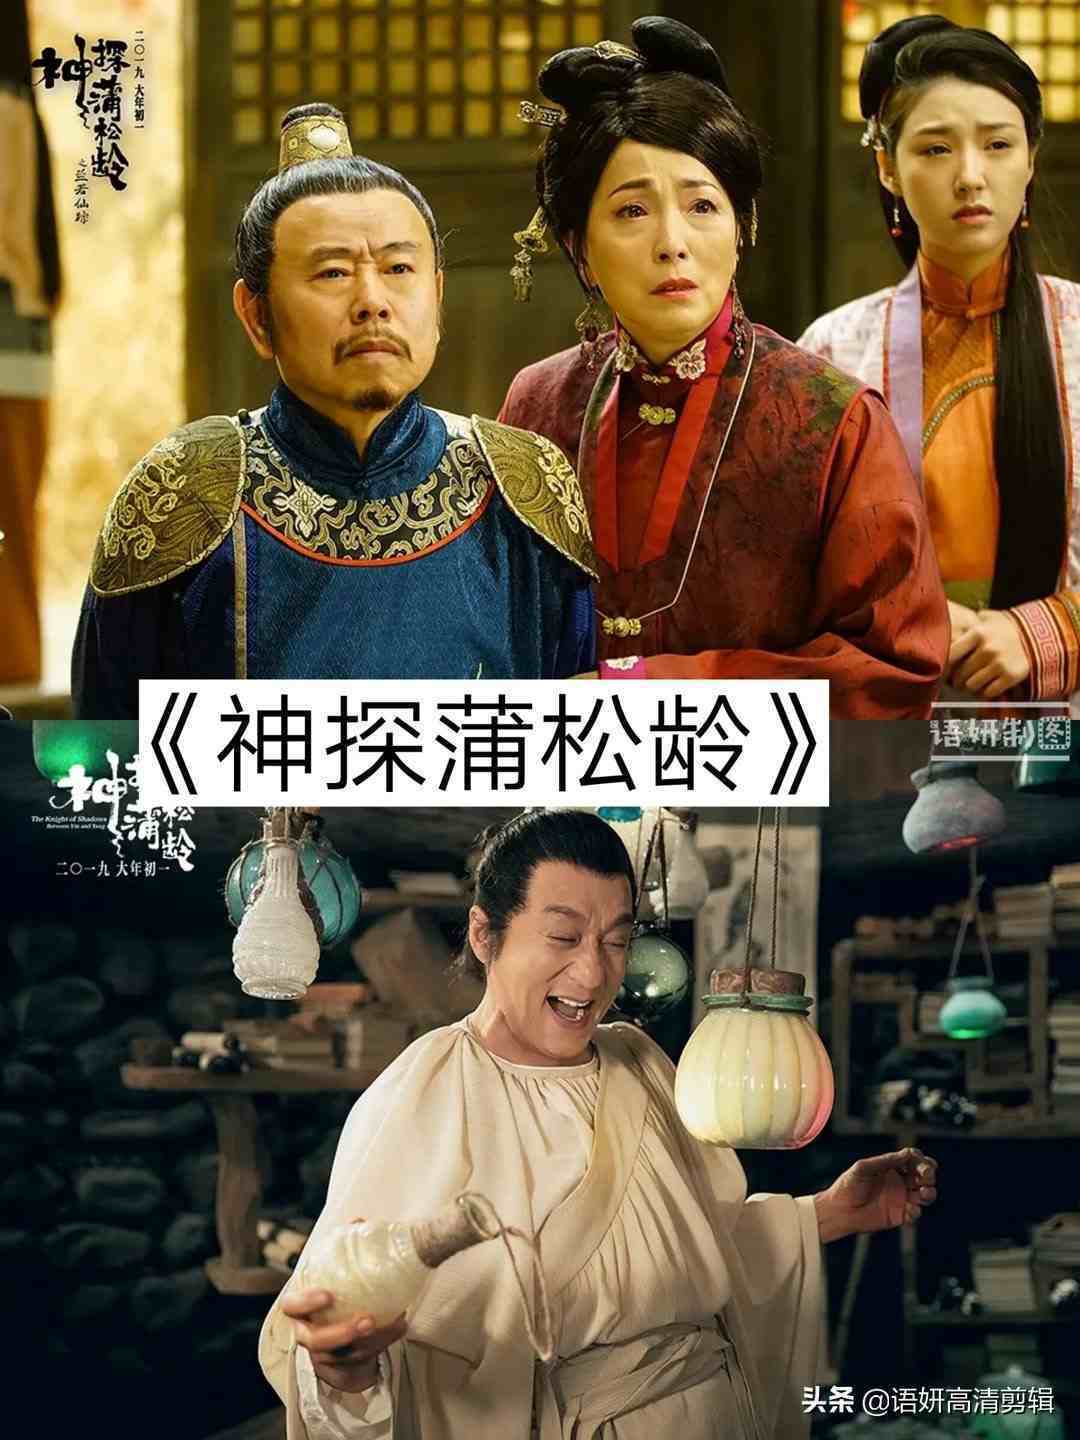 9部潘长江参演的爆笑电影，你看过哪几部？哪部最好看？